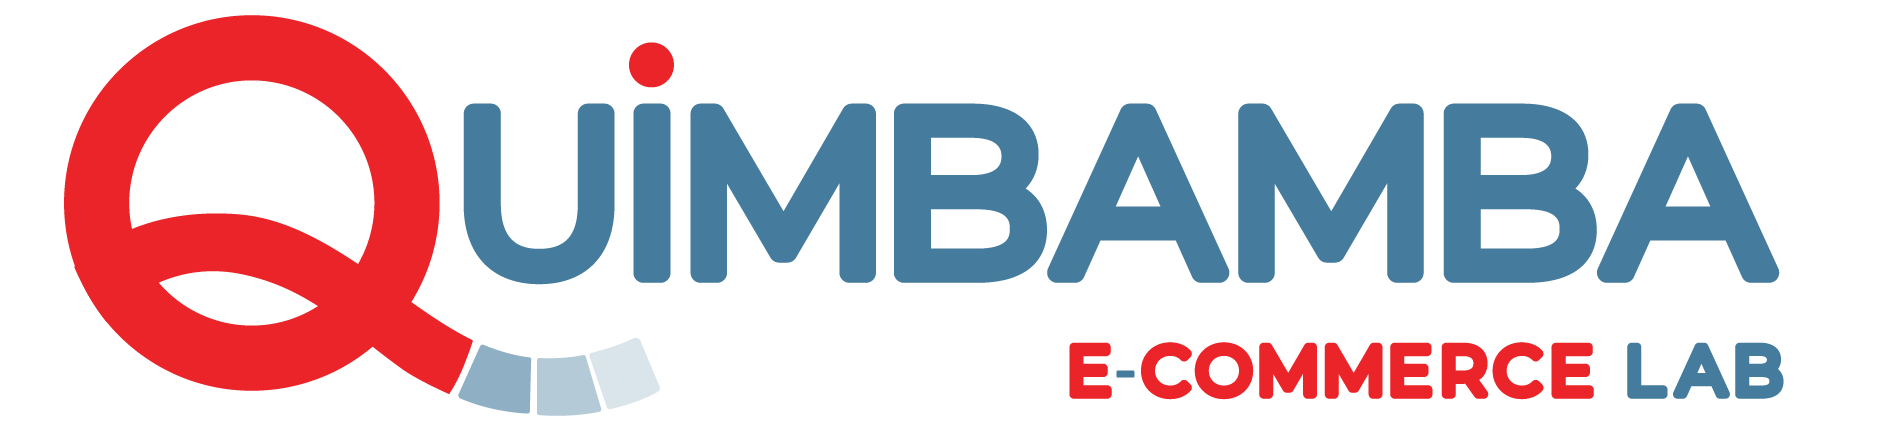 Quimbamba Ecommerce LAB